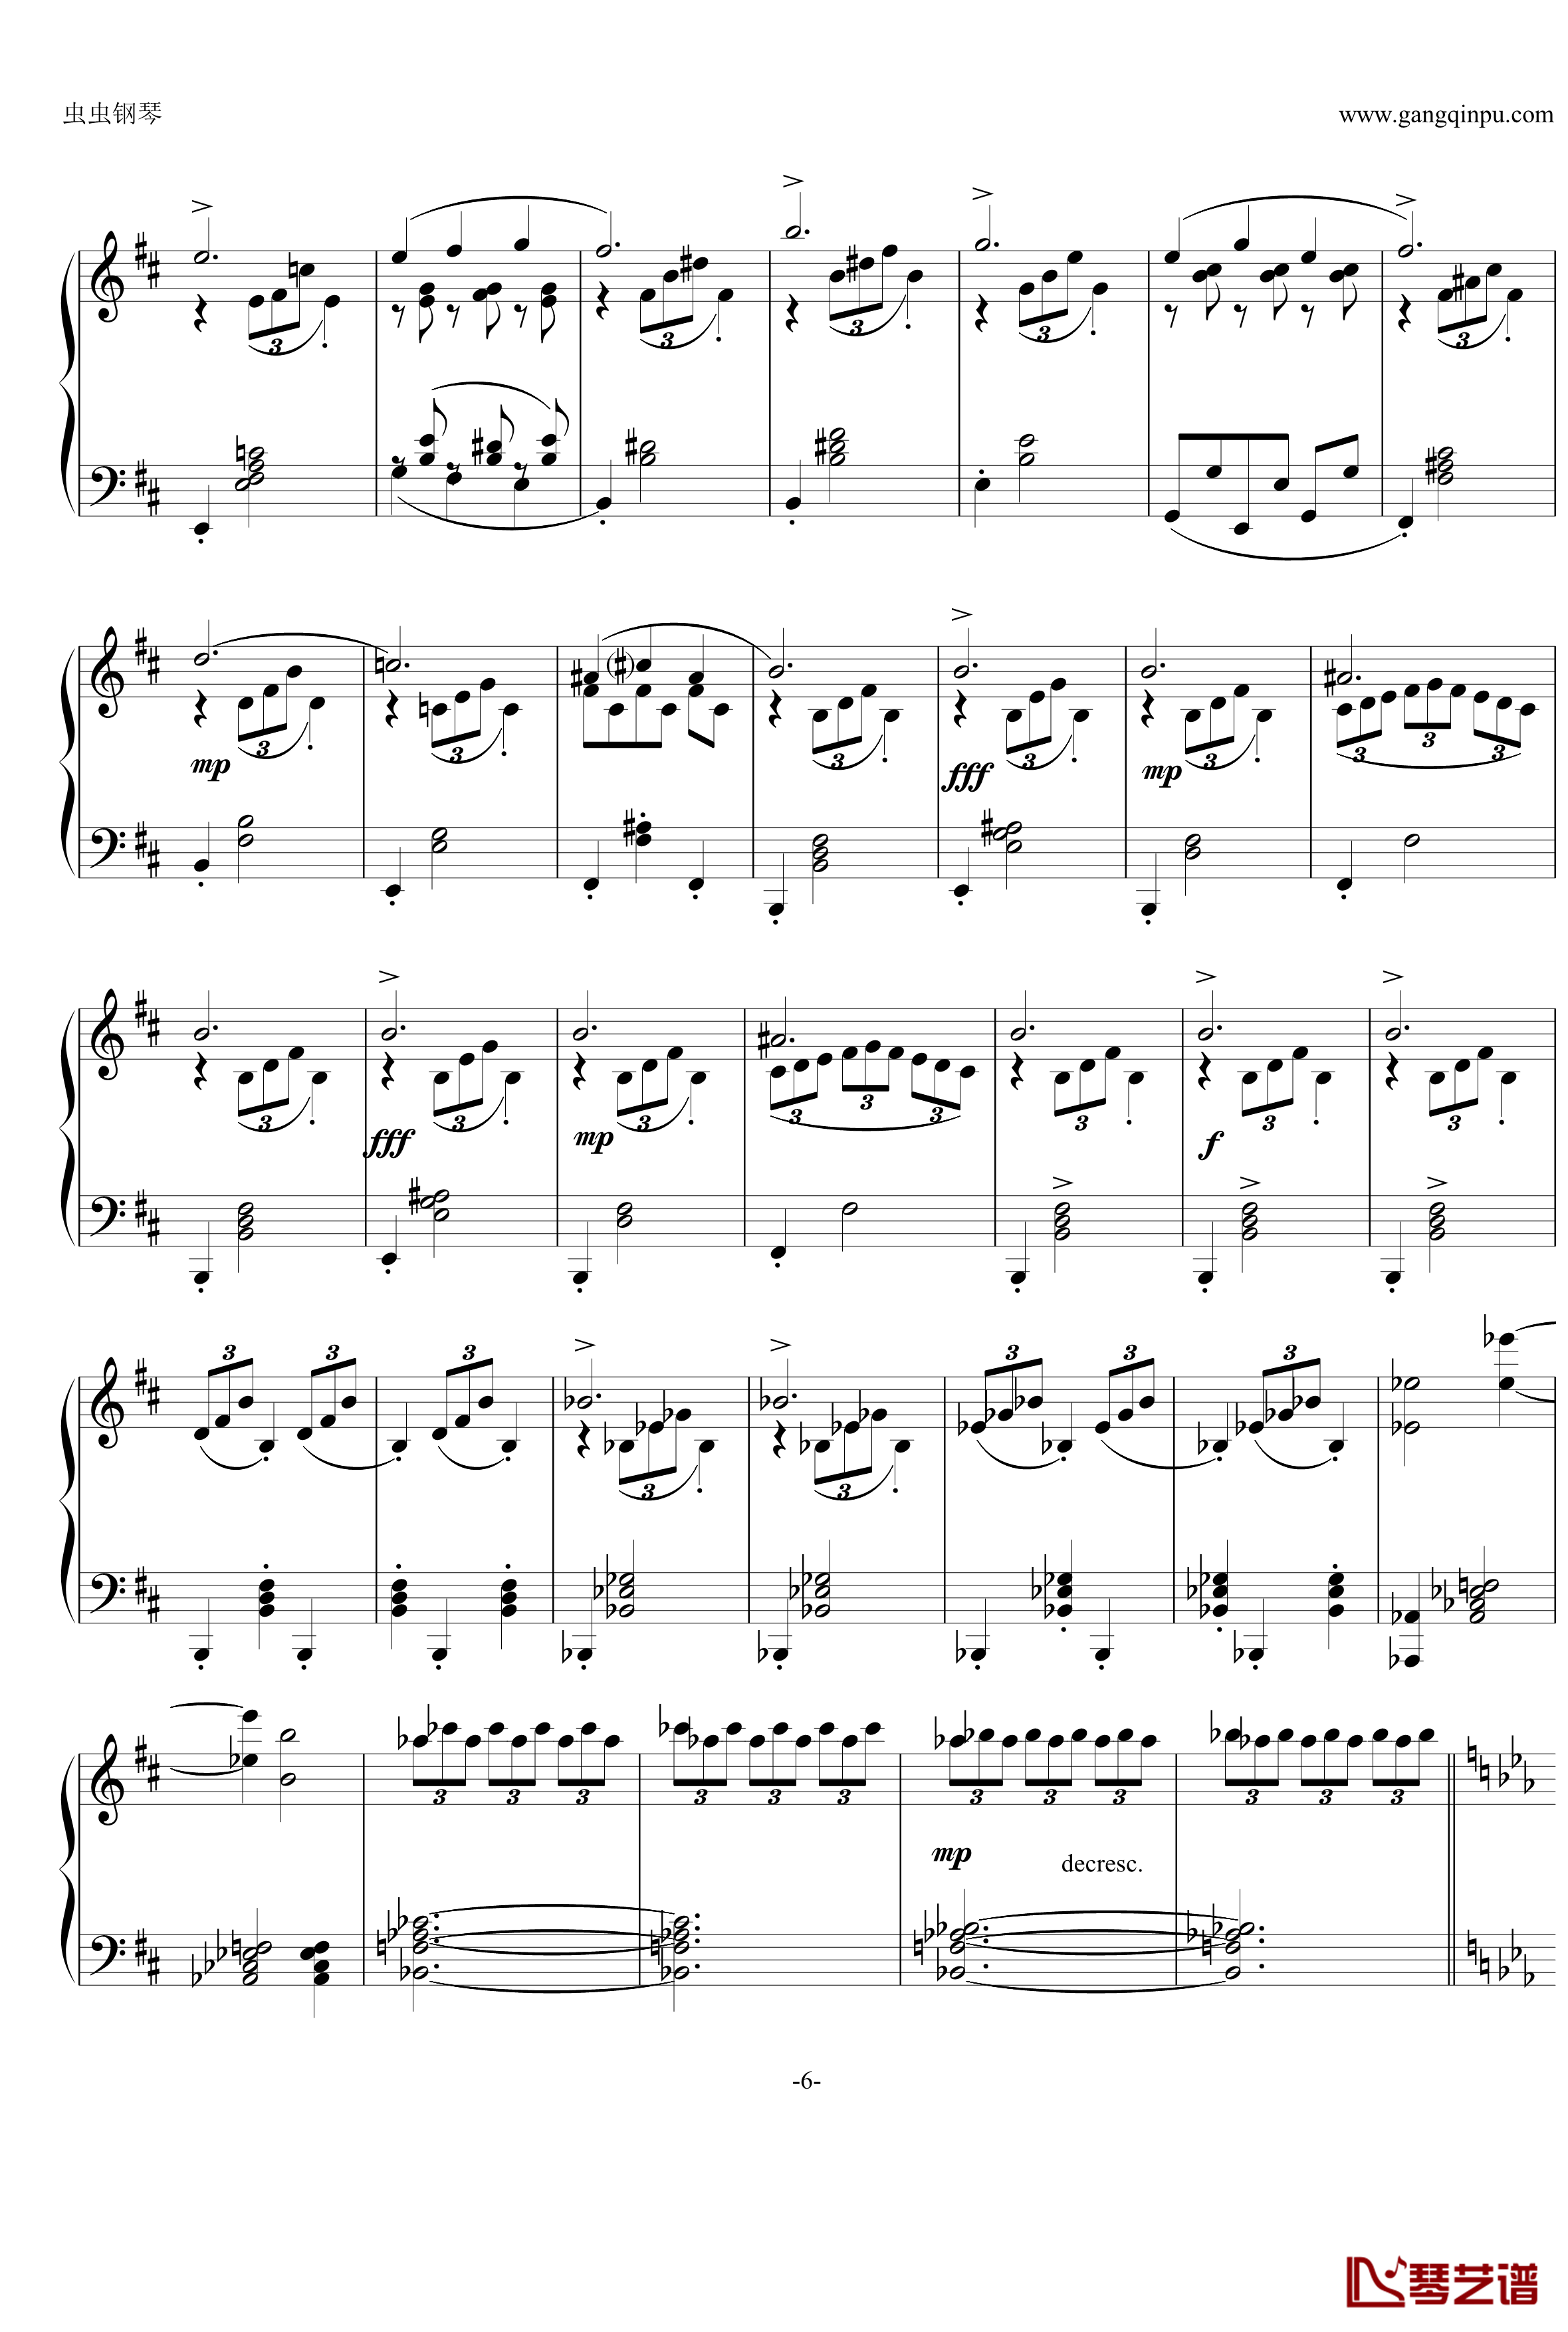 即兴曲Op.90 No.2钢琴谱-舒伯特-又名D899 No.26